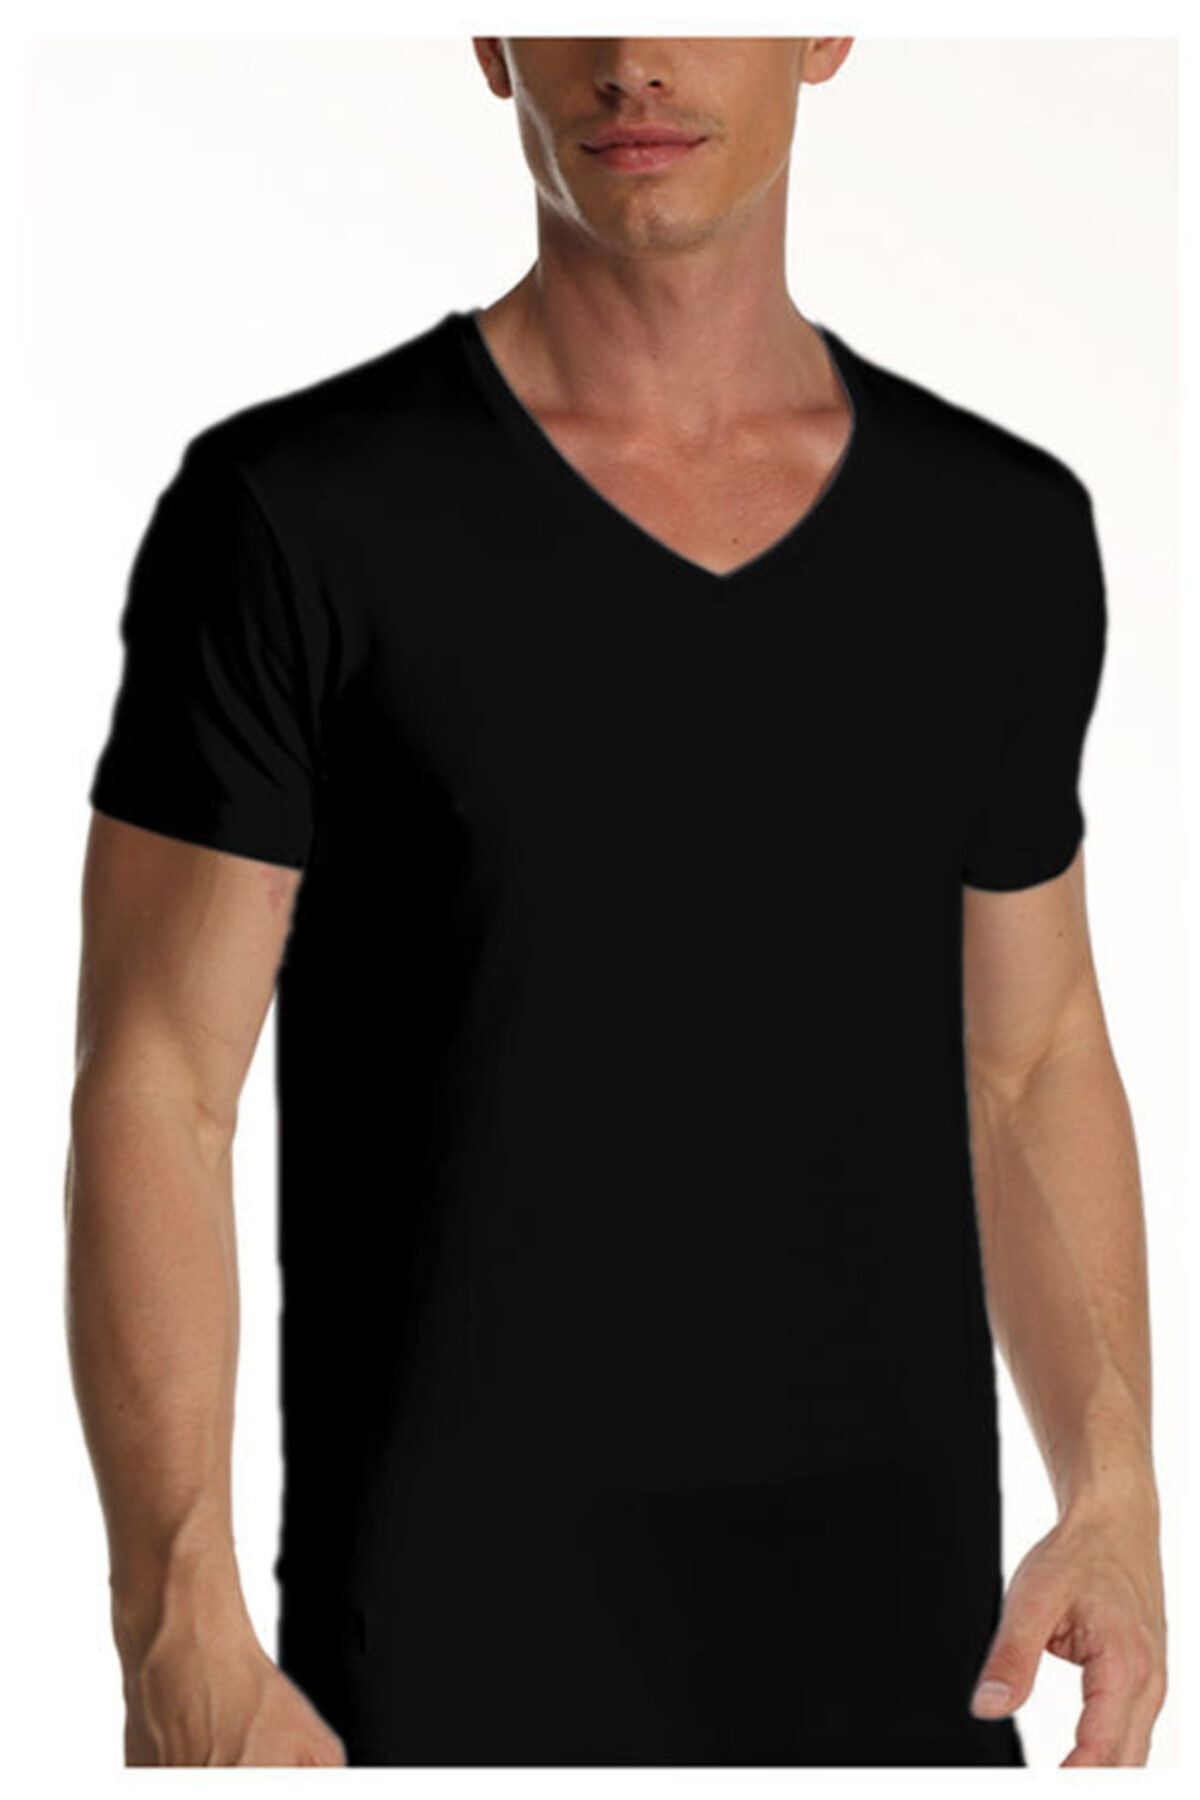 Çift Kaplan Erkek Siyah 3'lü Süprem V Yaka T-shirt Fanila 952